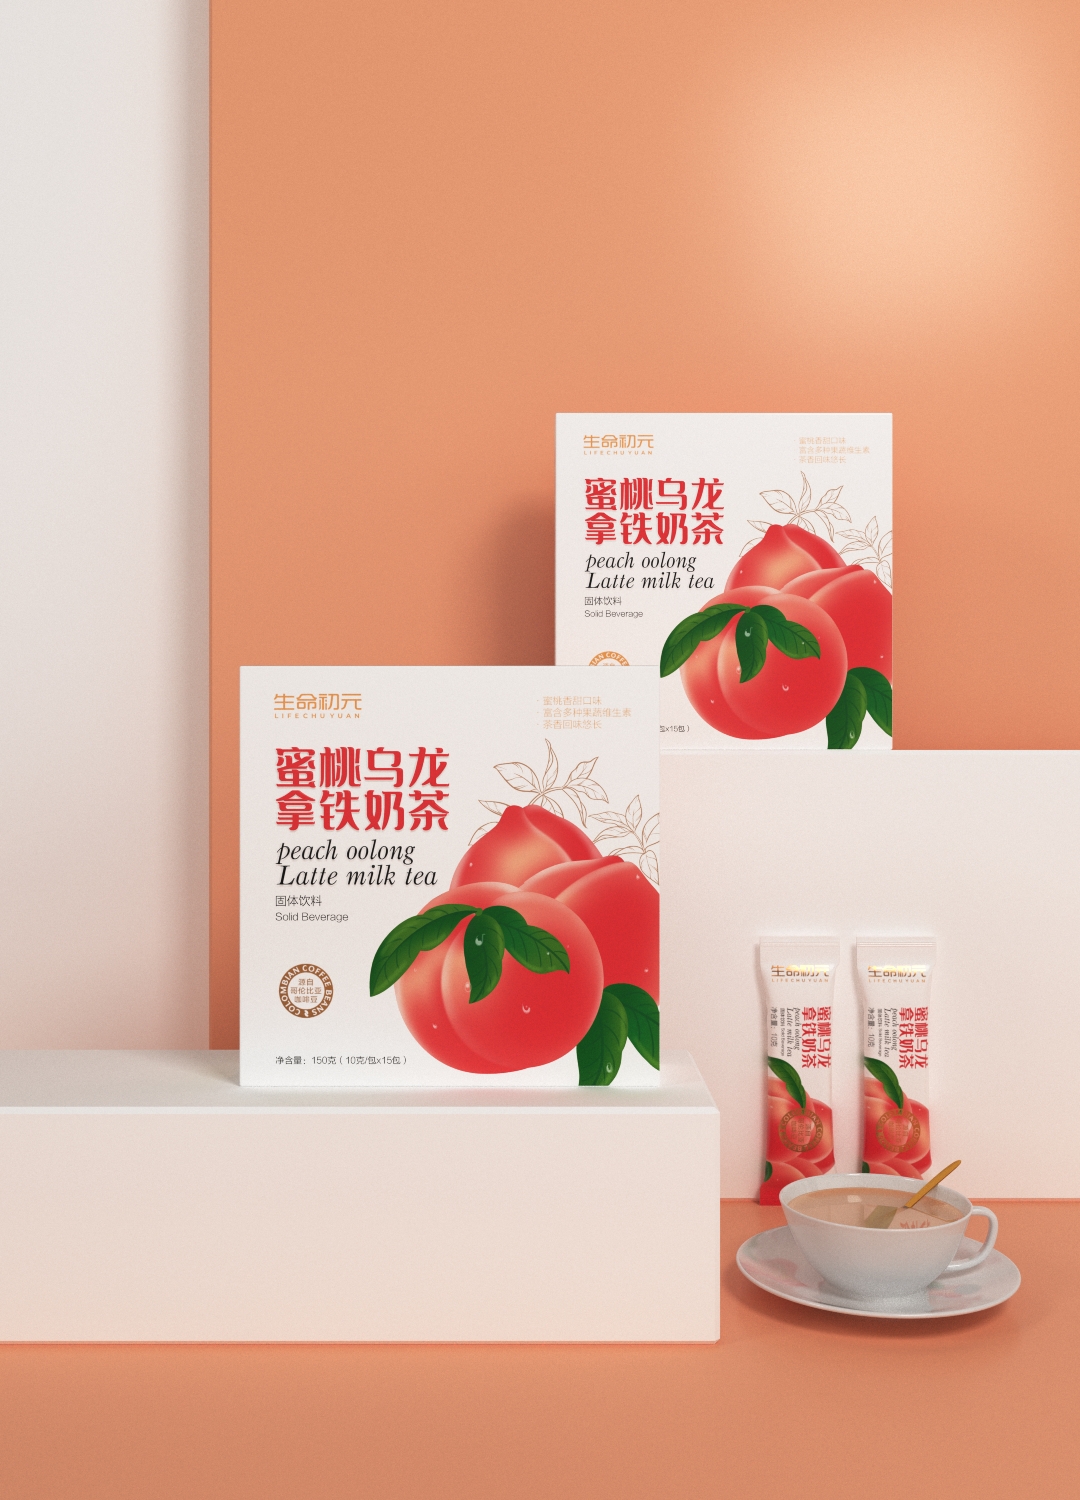 保健食品包装 固体饮料 蜜桃乌龙奶茶包装设计 · 生命初元©刘益铭 原创作品